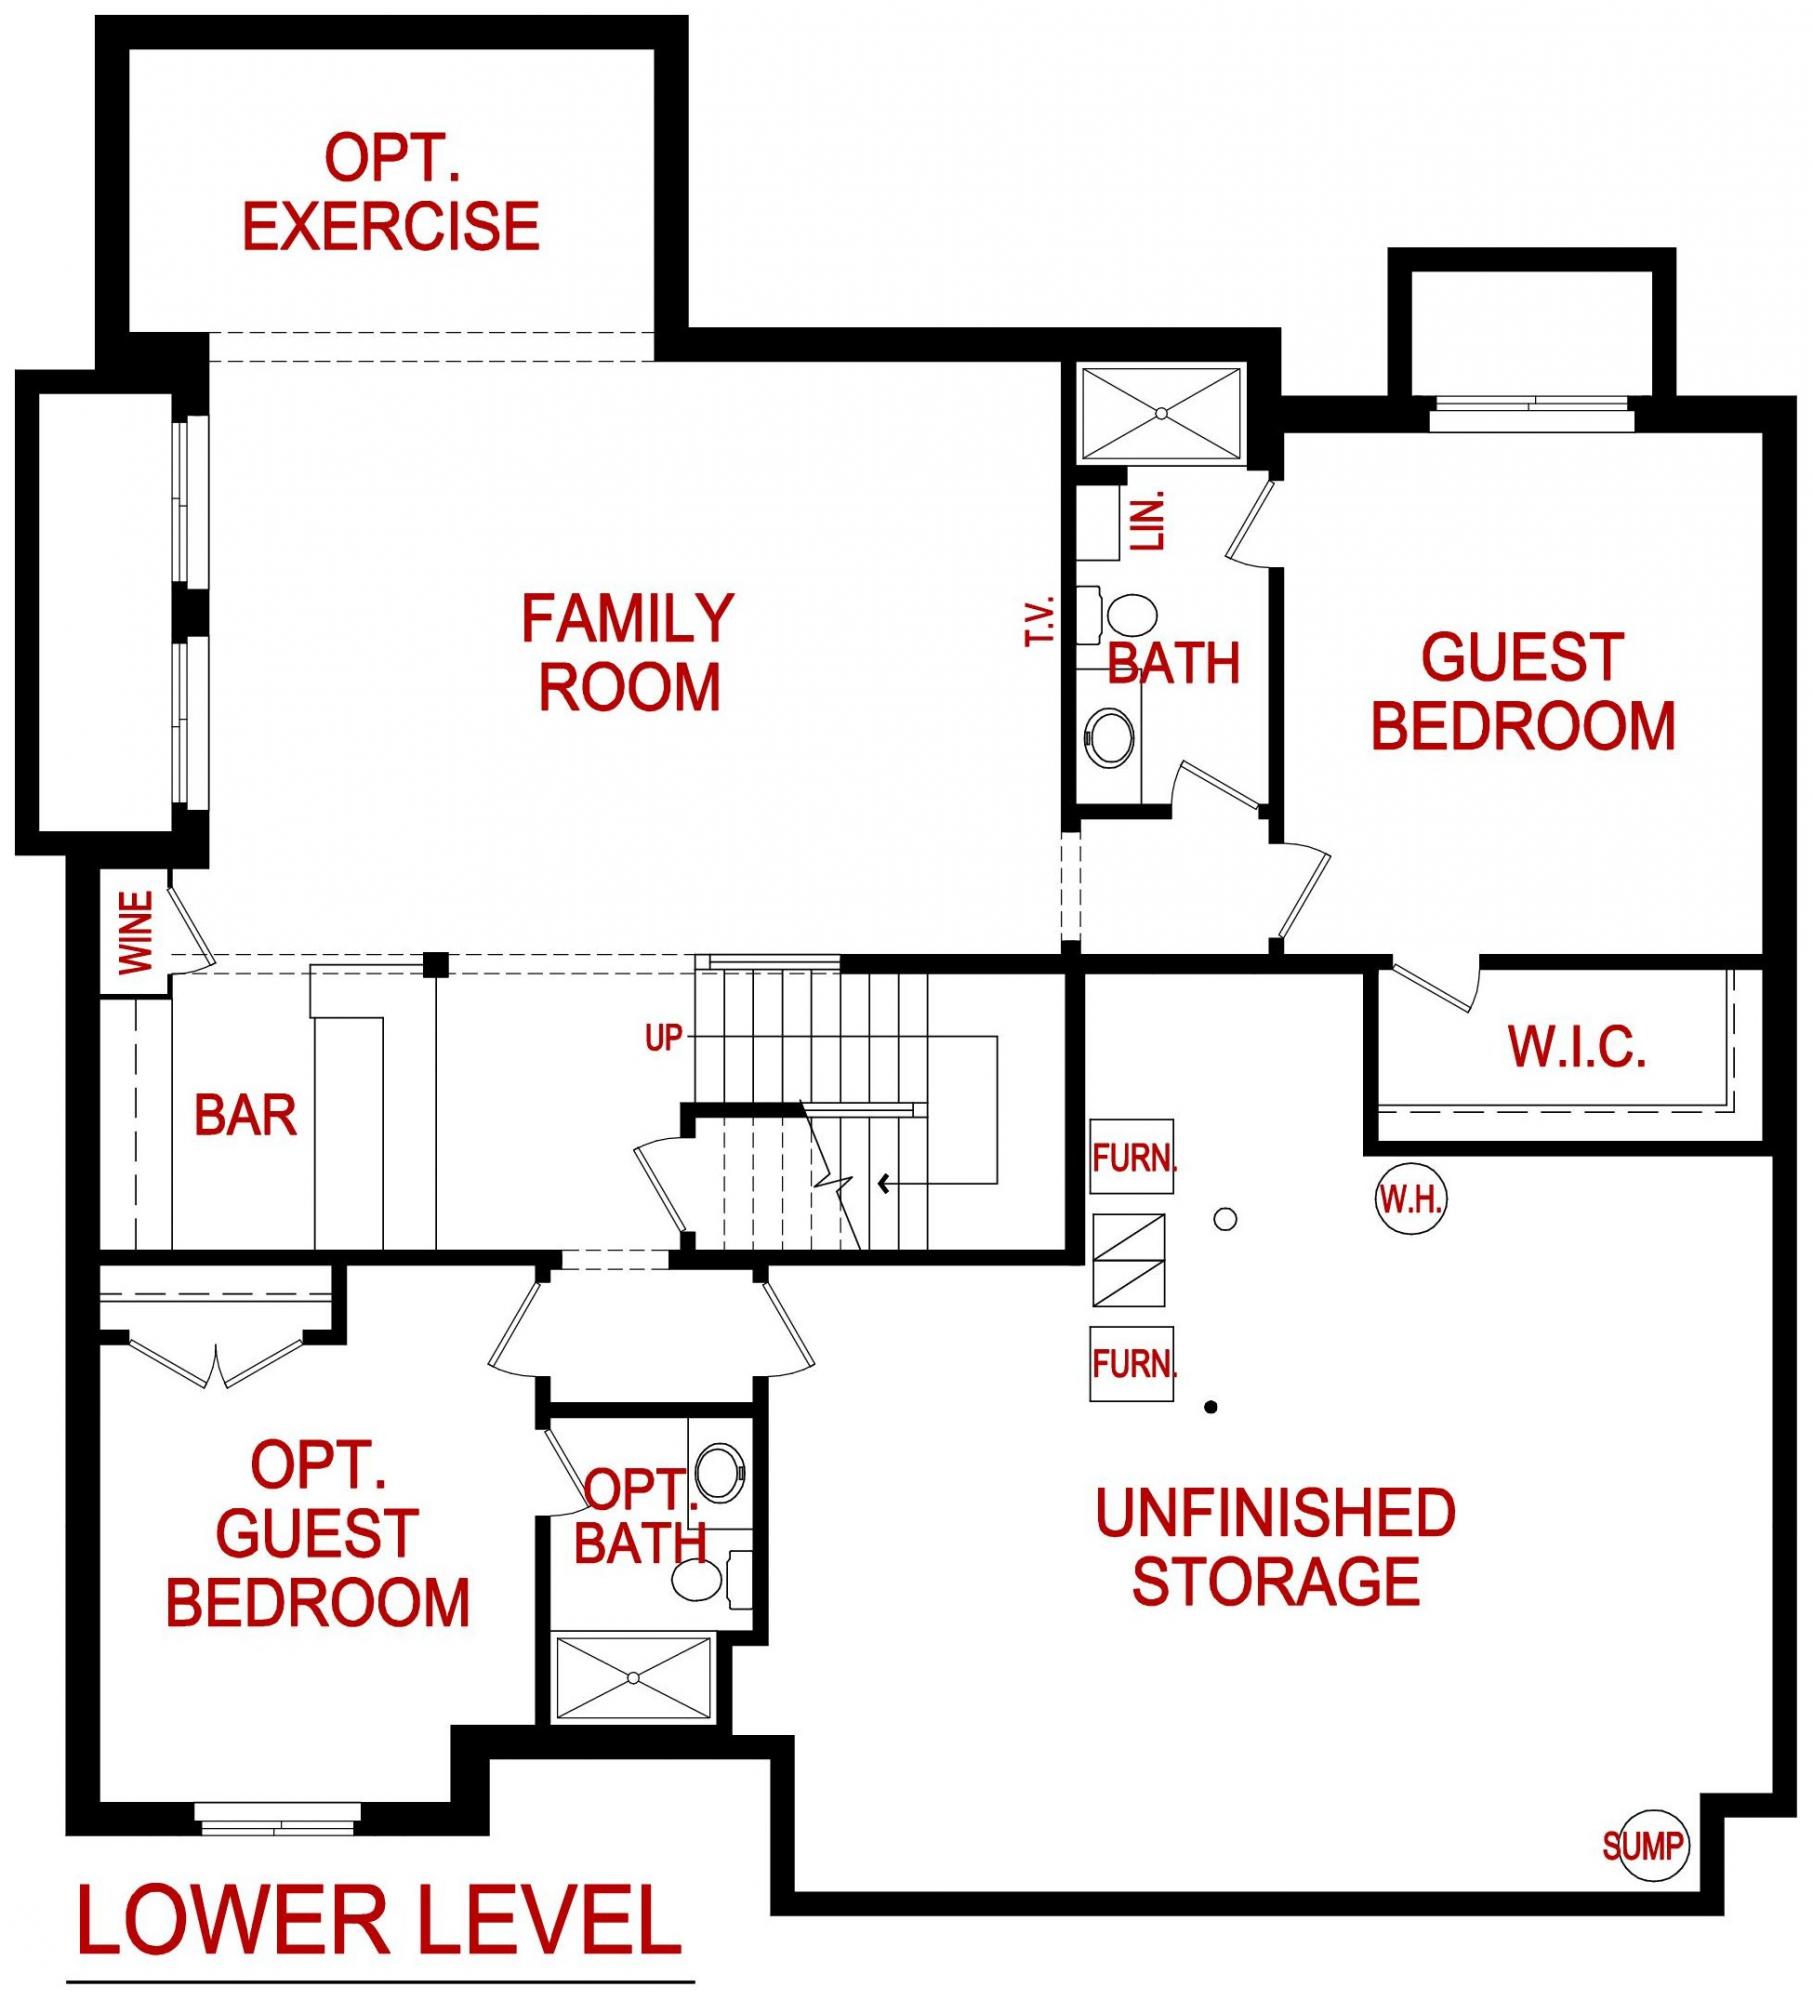 Lower level floor plan for the barrington model from Lambie custom homes